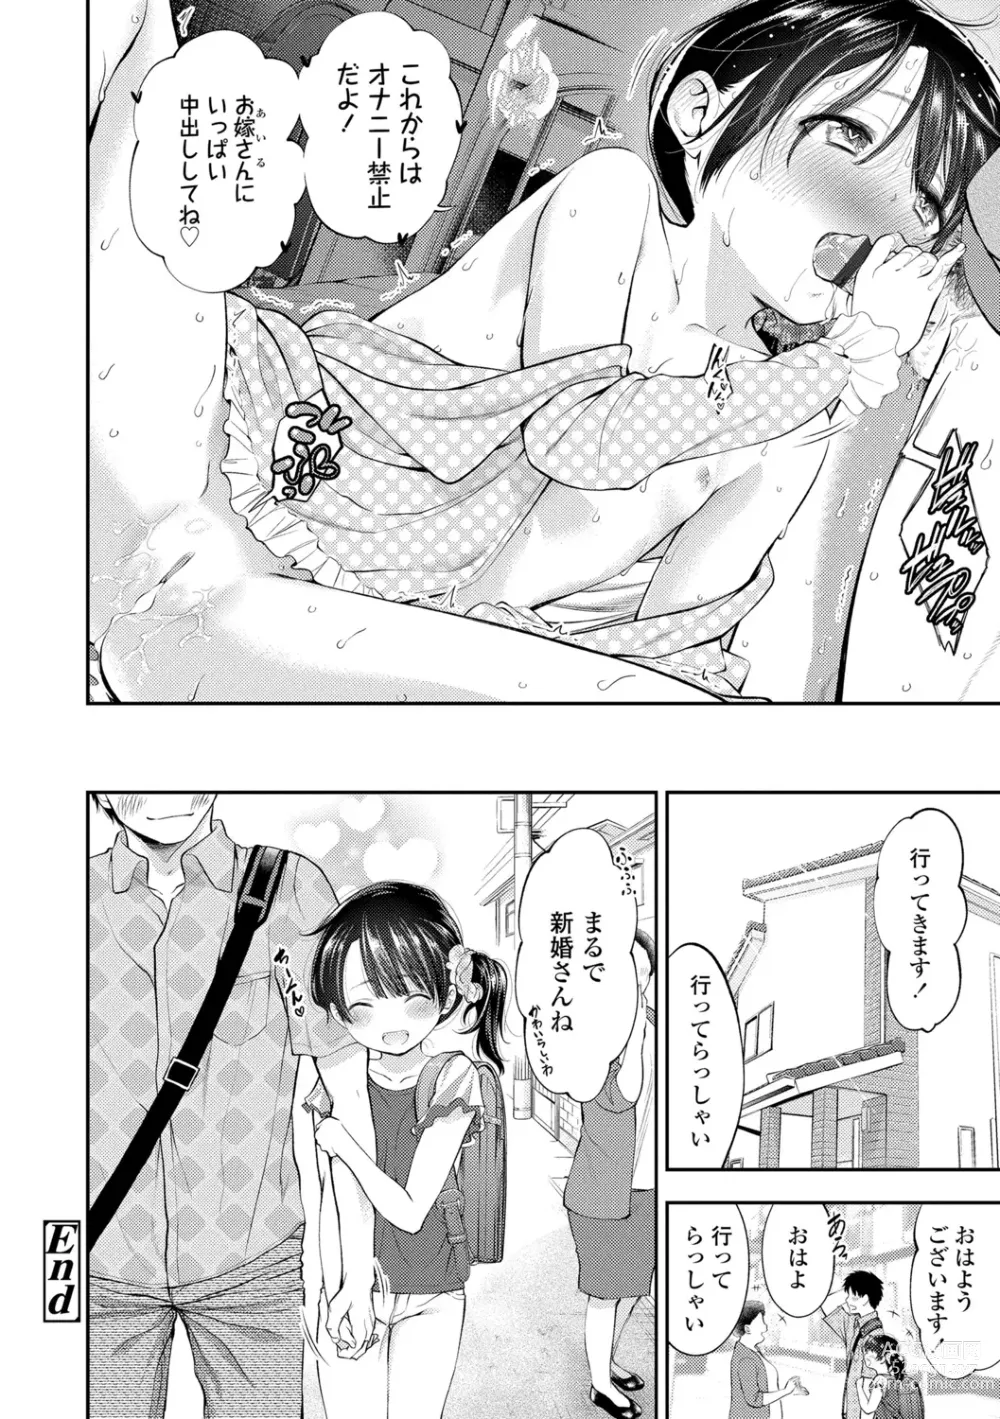 Page 192 of manga Onnanoko ni Shite yo - Make me your first lover.